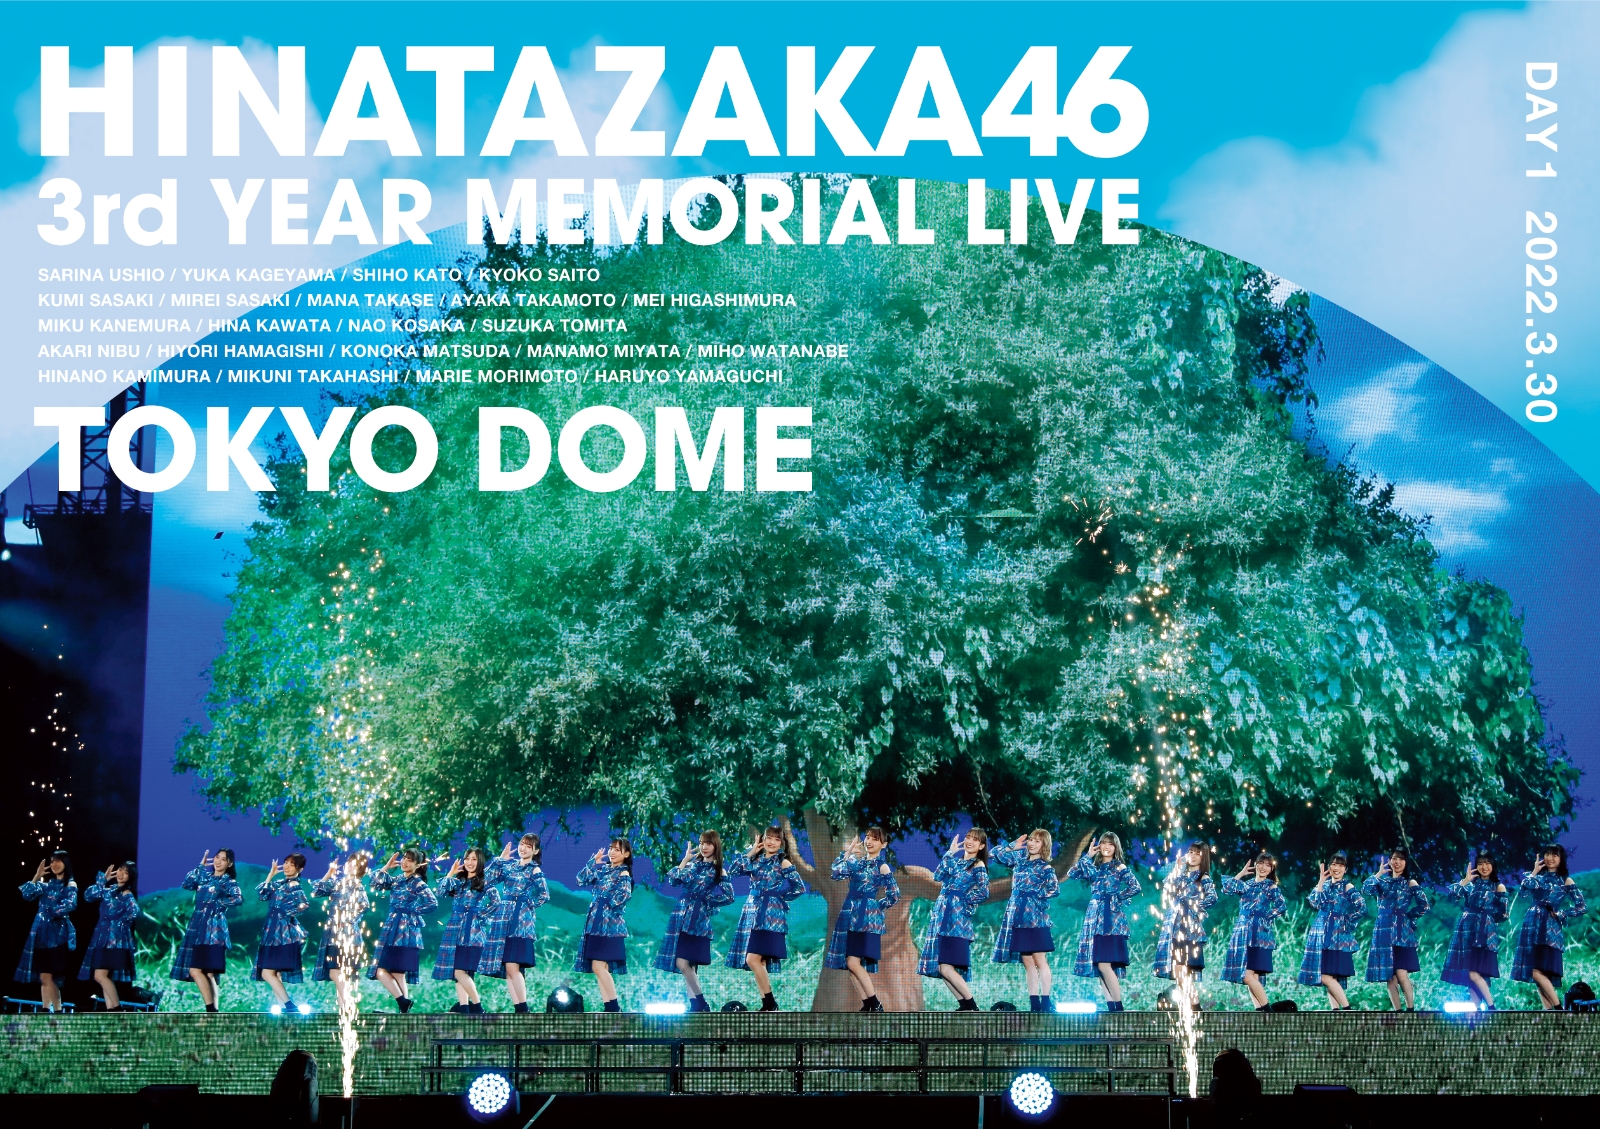 楽天ブックス: 日向坂46 3周年記念MEMORIAL LIVE ～3回目のひな誕祭